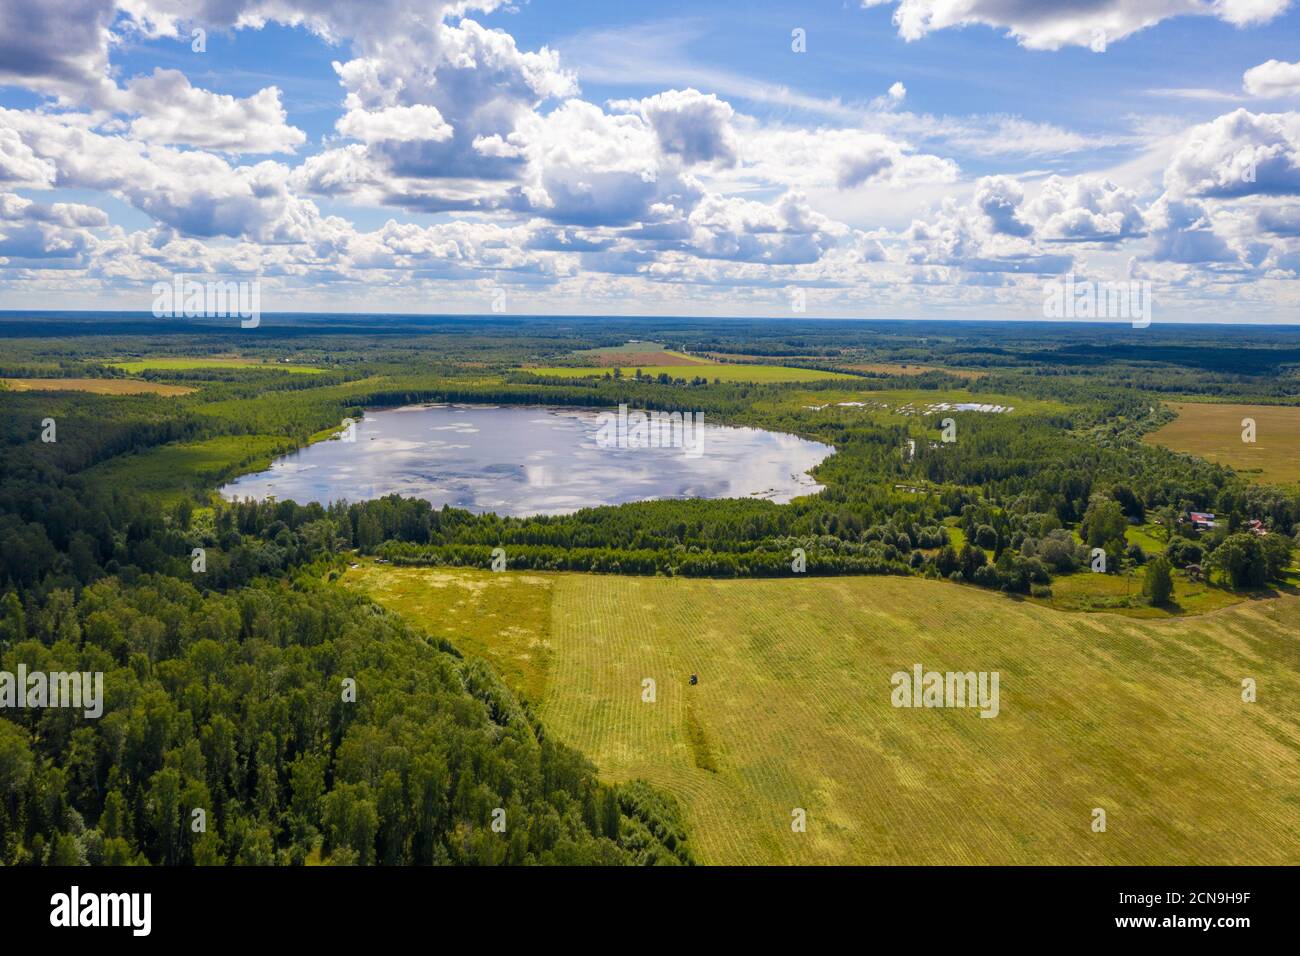 Un piccolo lago circondato da una foresta verde vicino al villaggio di Bunkovo, distretto di Ivanovo, regione di Ivanovo, Russia. Foto scattata da un drone. Foto Stock